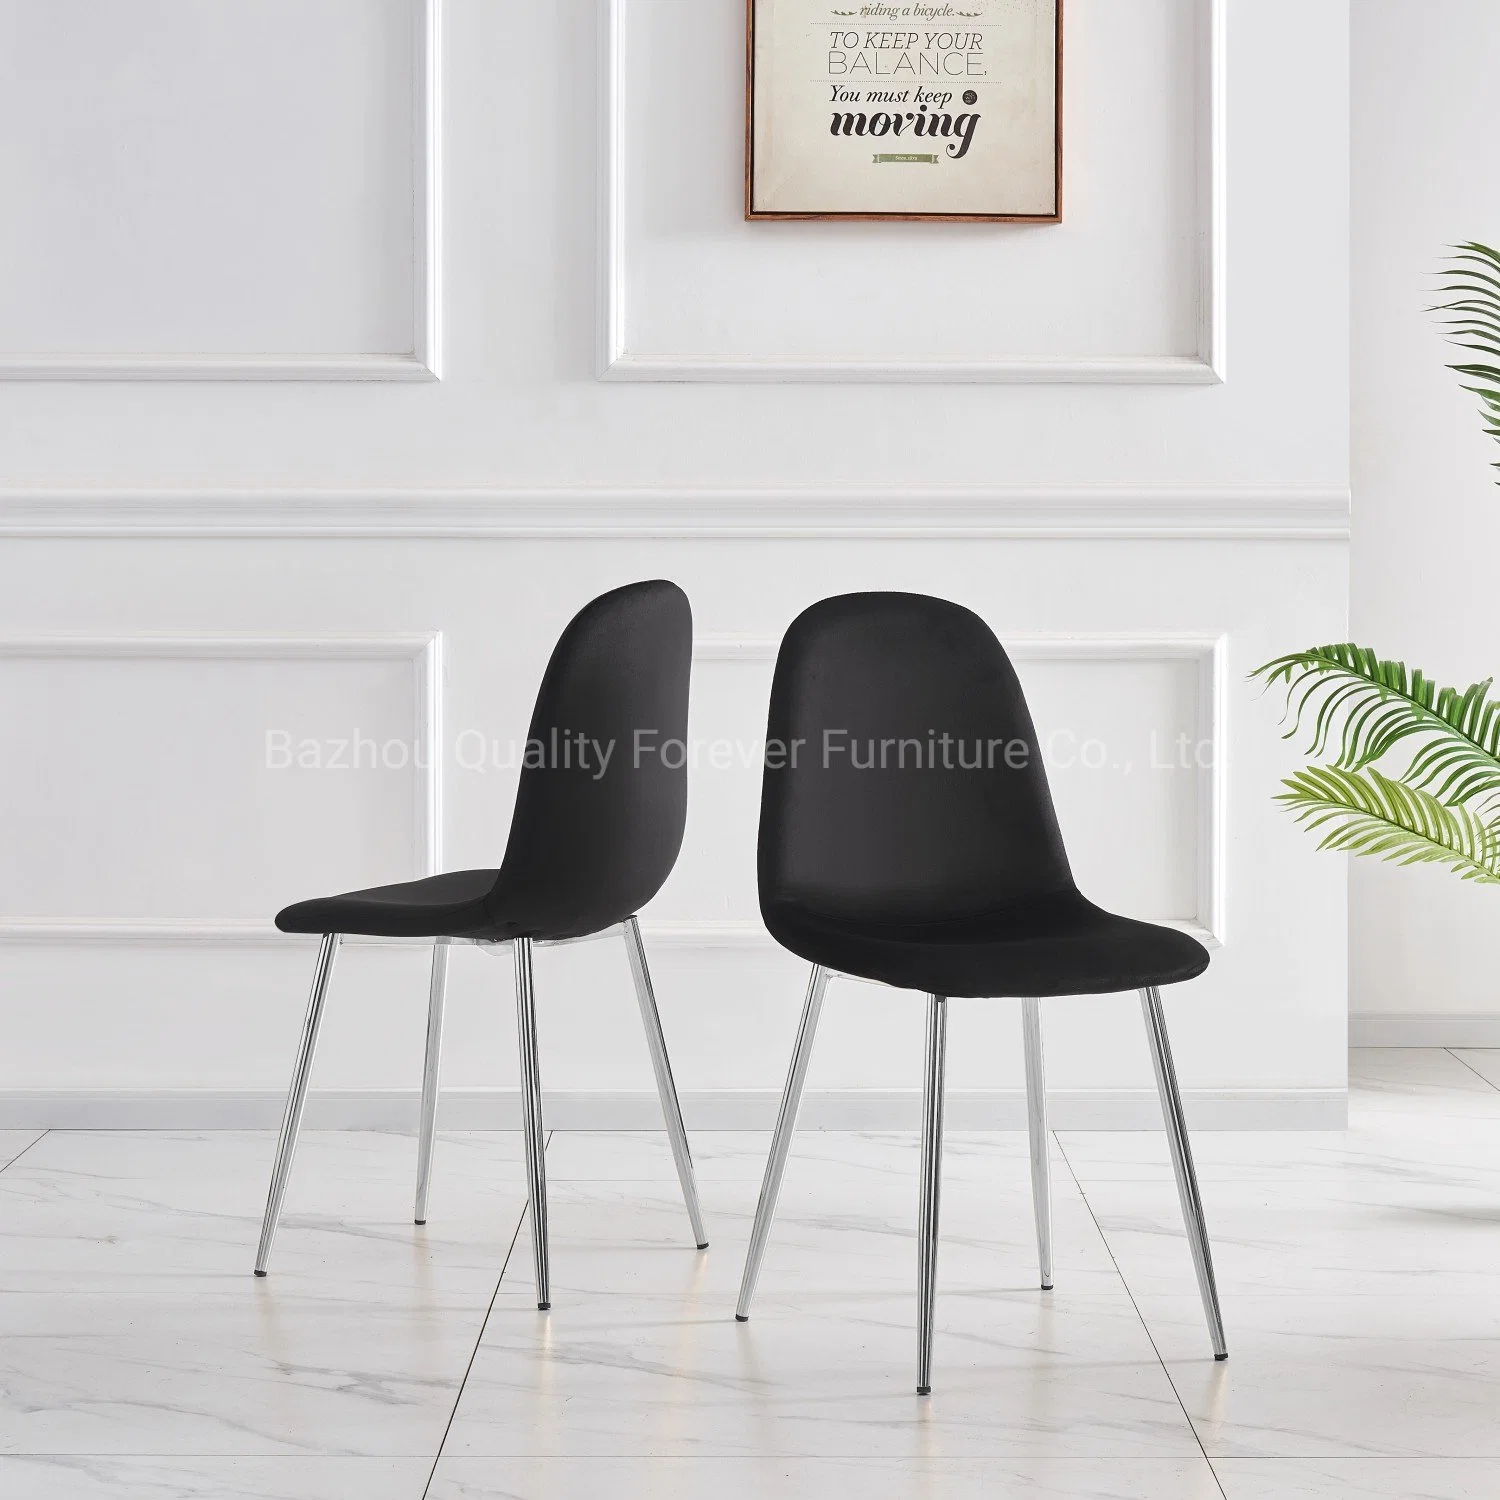 Luxueux style cadre en acier Meubles de café Table ensemble de chaises Café restaurant Meubles Restaurant chaise de loisirs noire